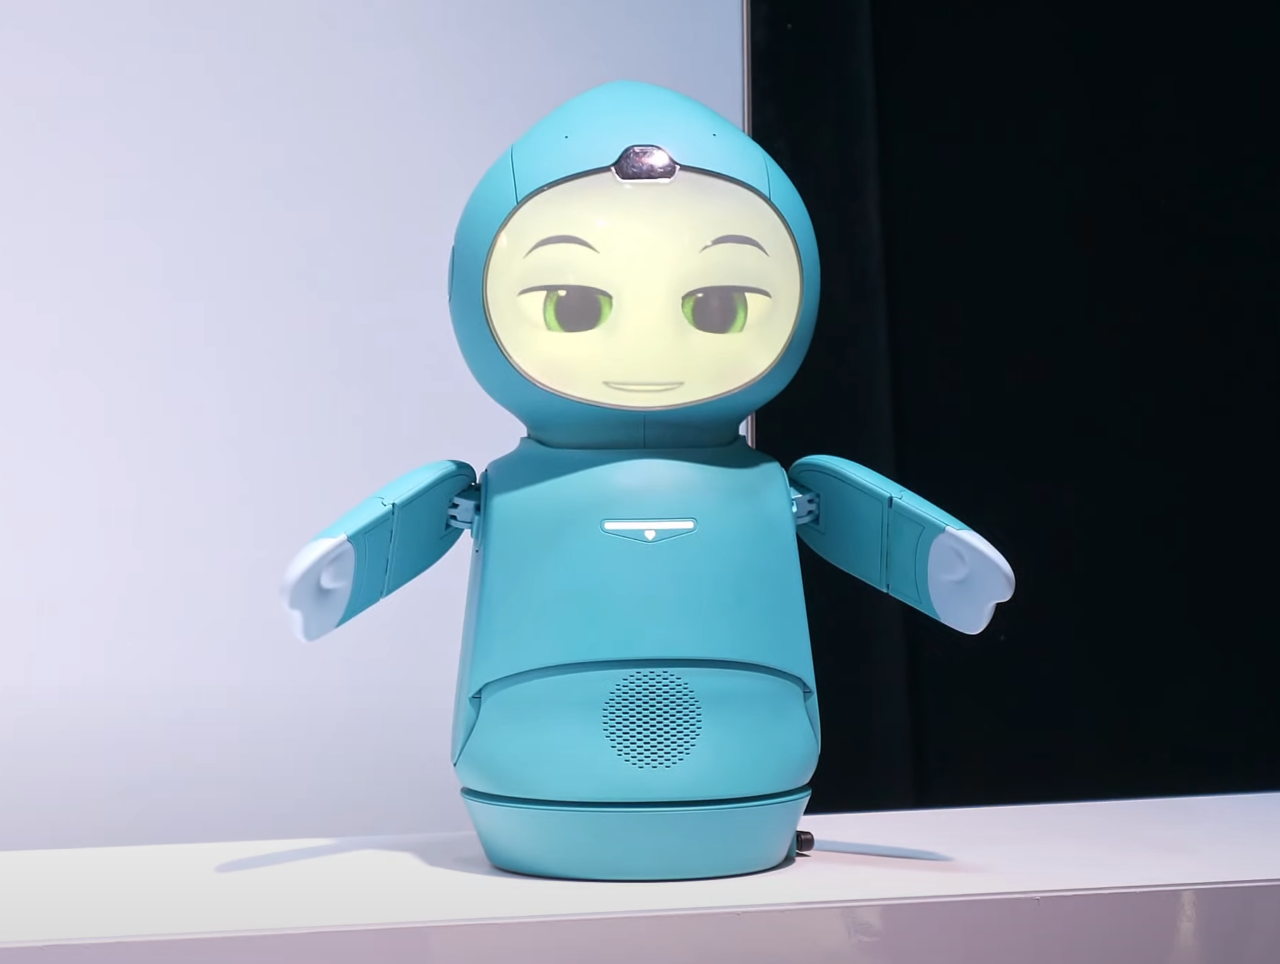 Robot o wyglądzie antropomorficznym z dużymi okrągłymi oczami i w niebieskim kolorze, stojący na białym blacie z ciemnym tłem.